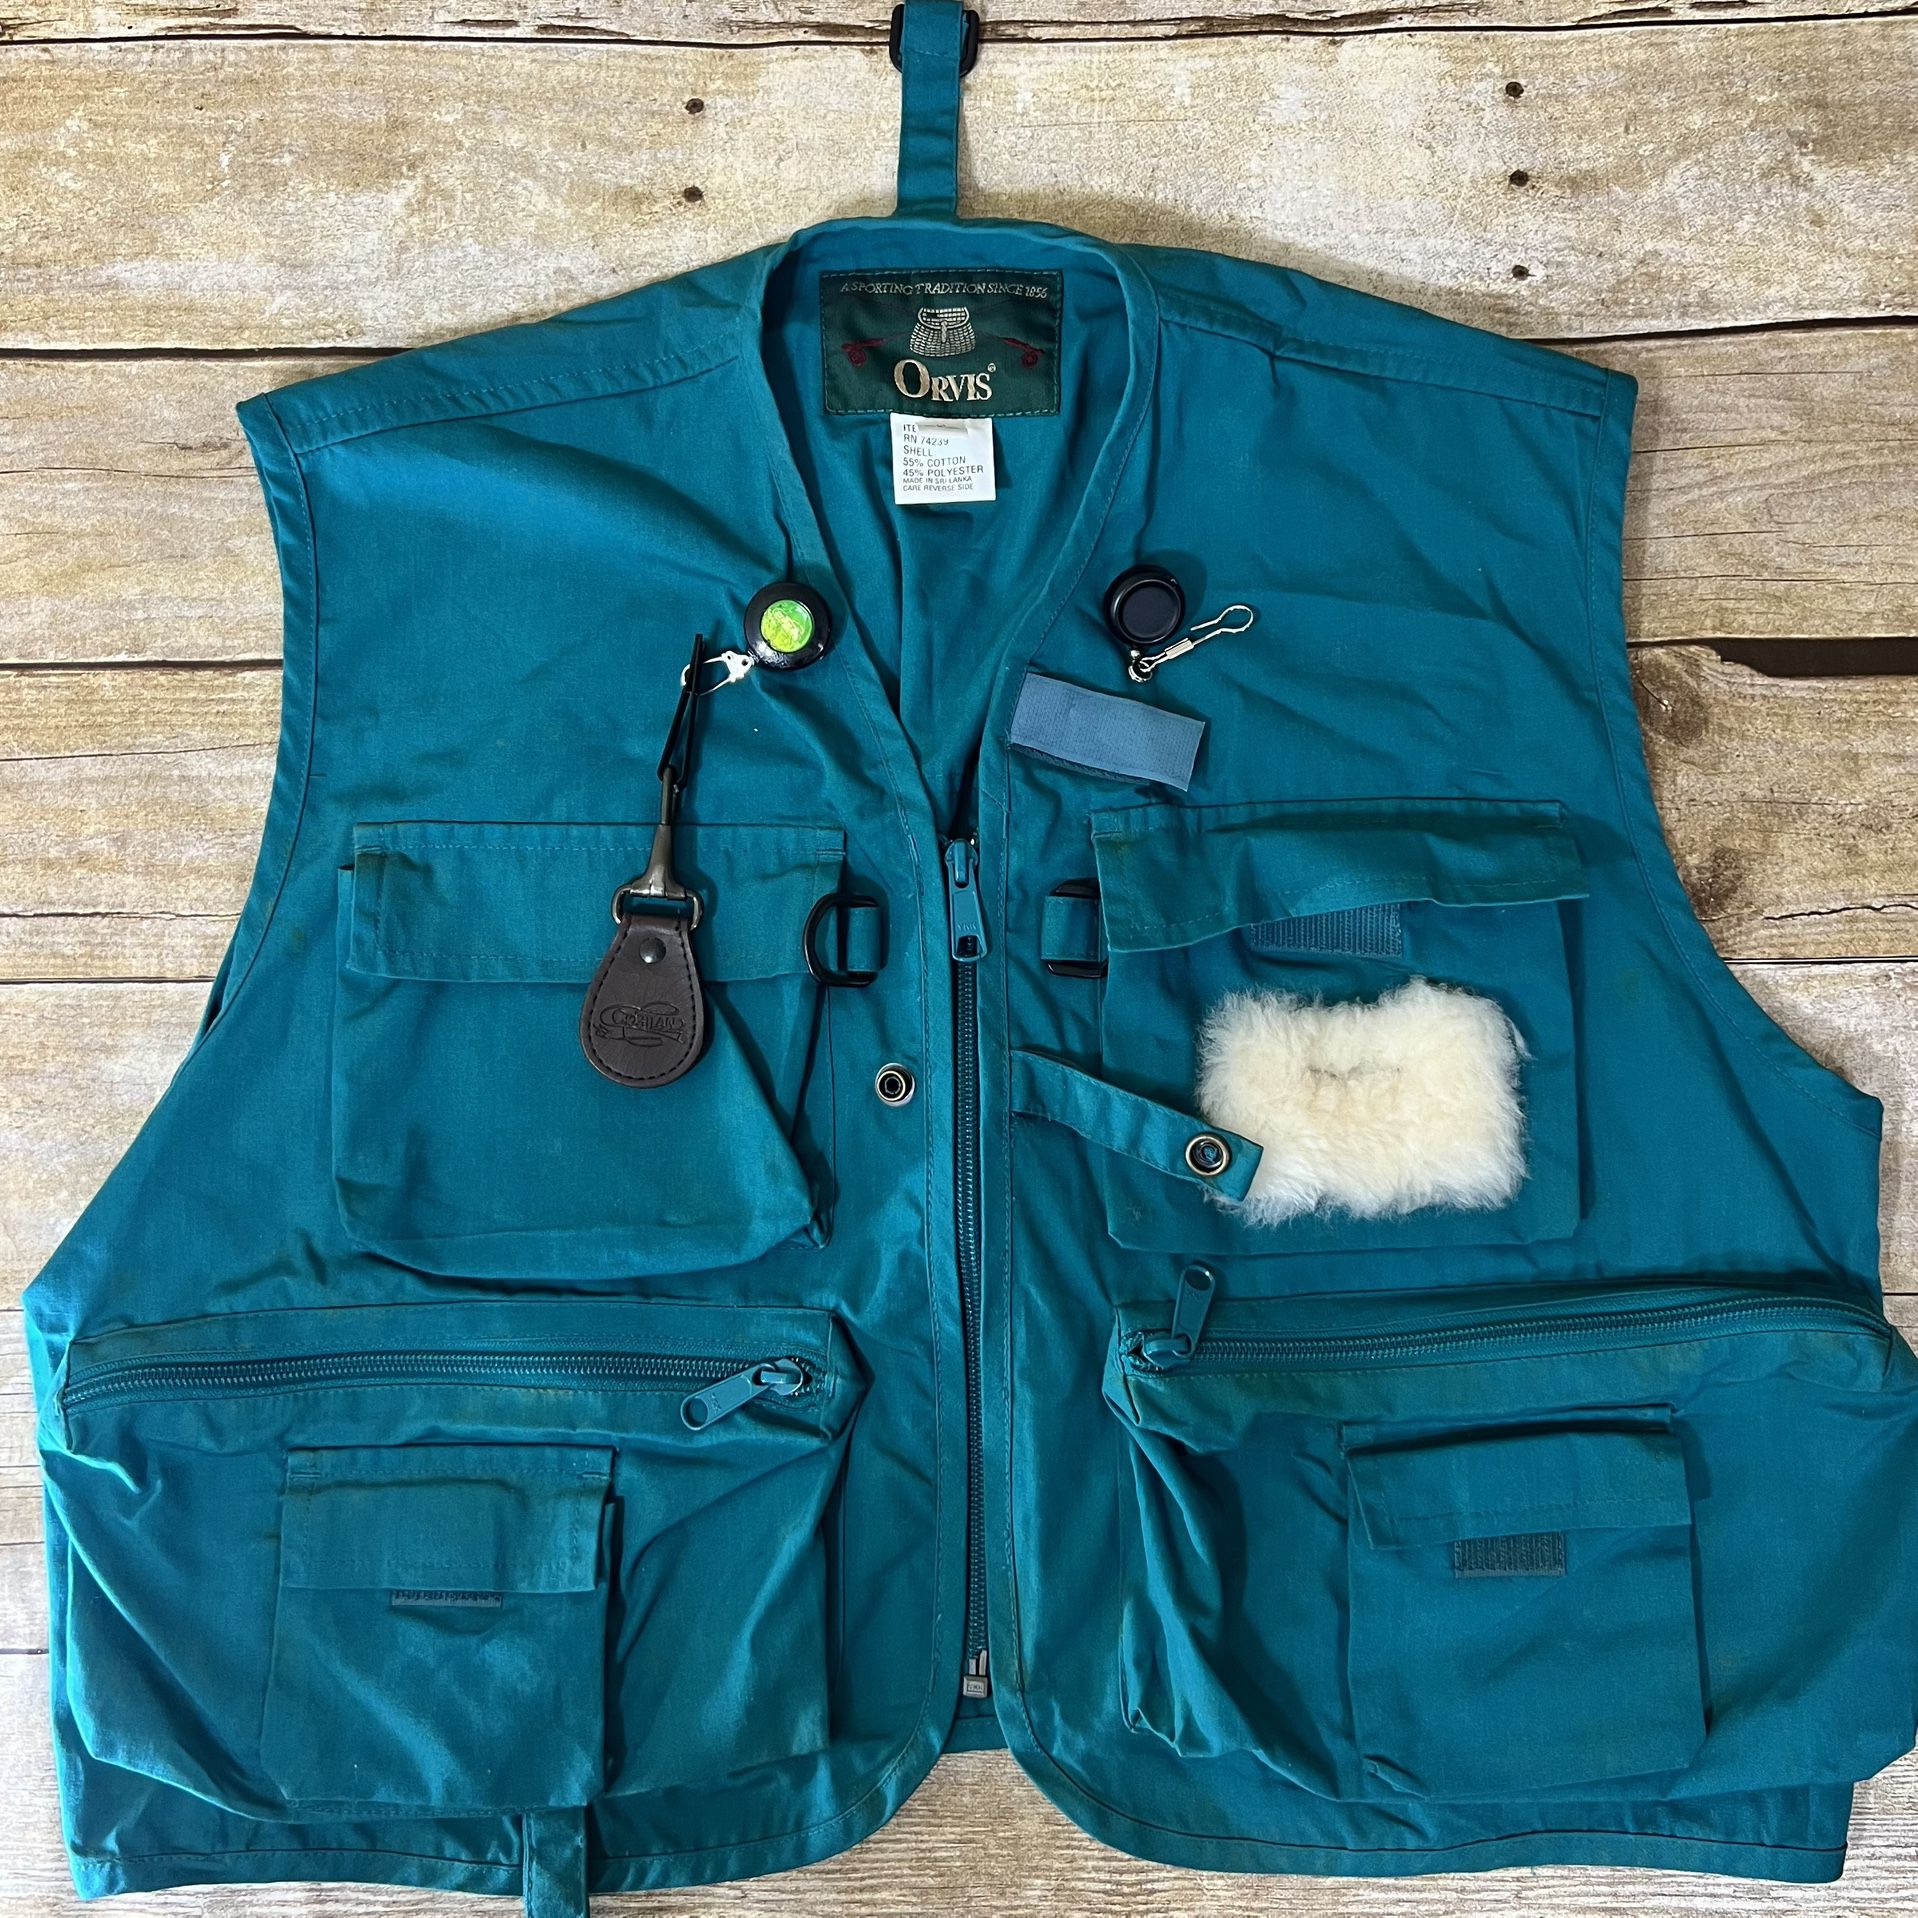 Orvis fishing jacket